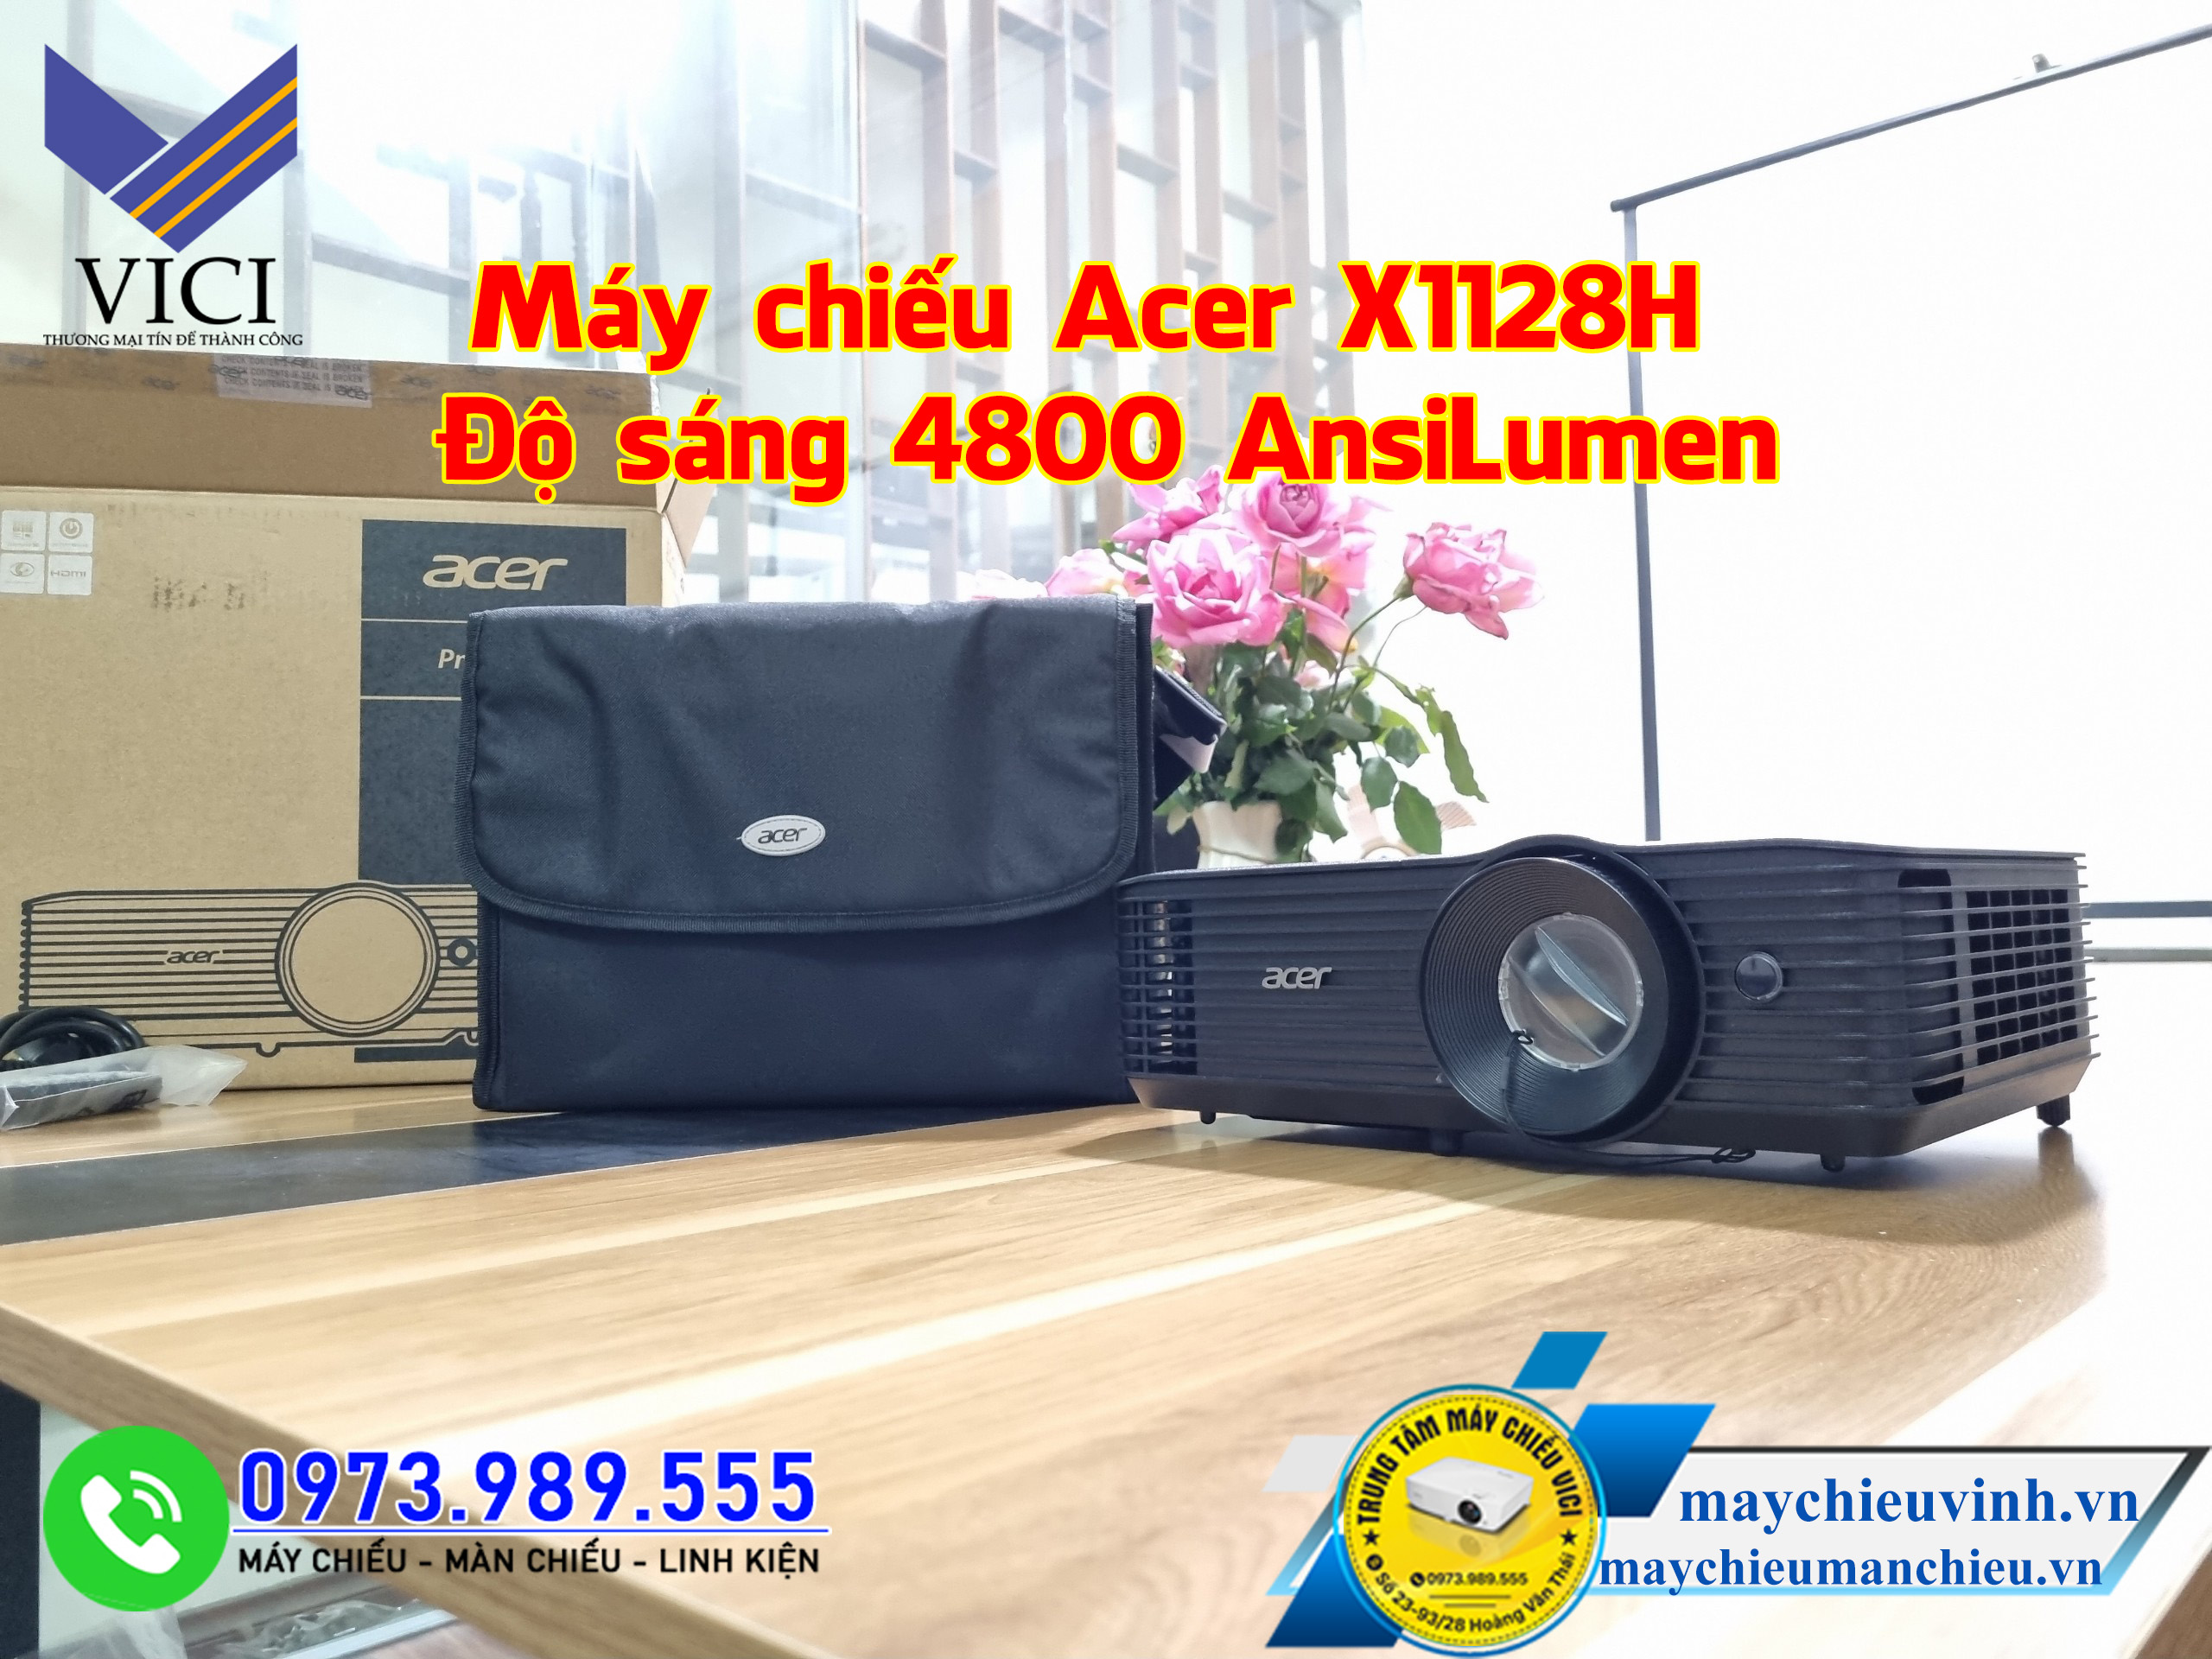 Máy chiếu Acer X1128H độ sáng khủng với 4800 AnsiLumen